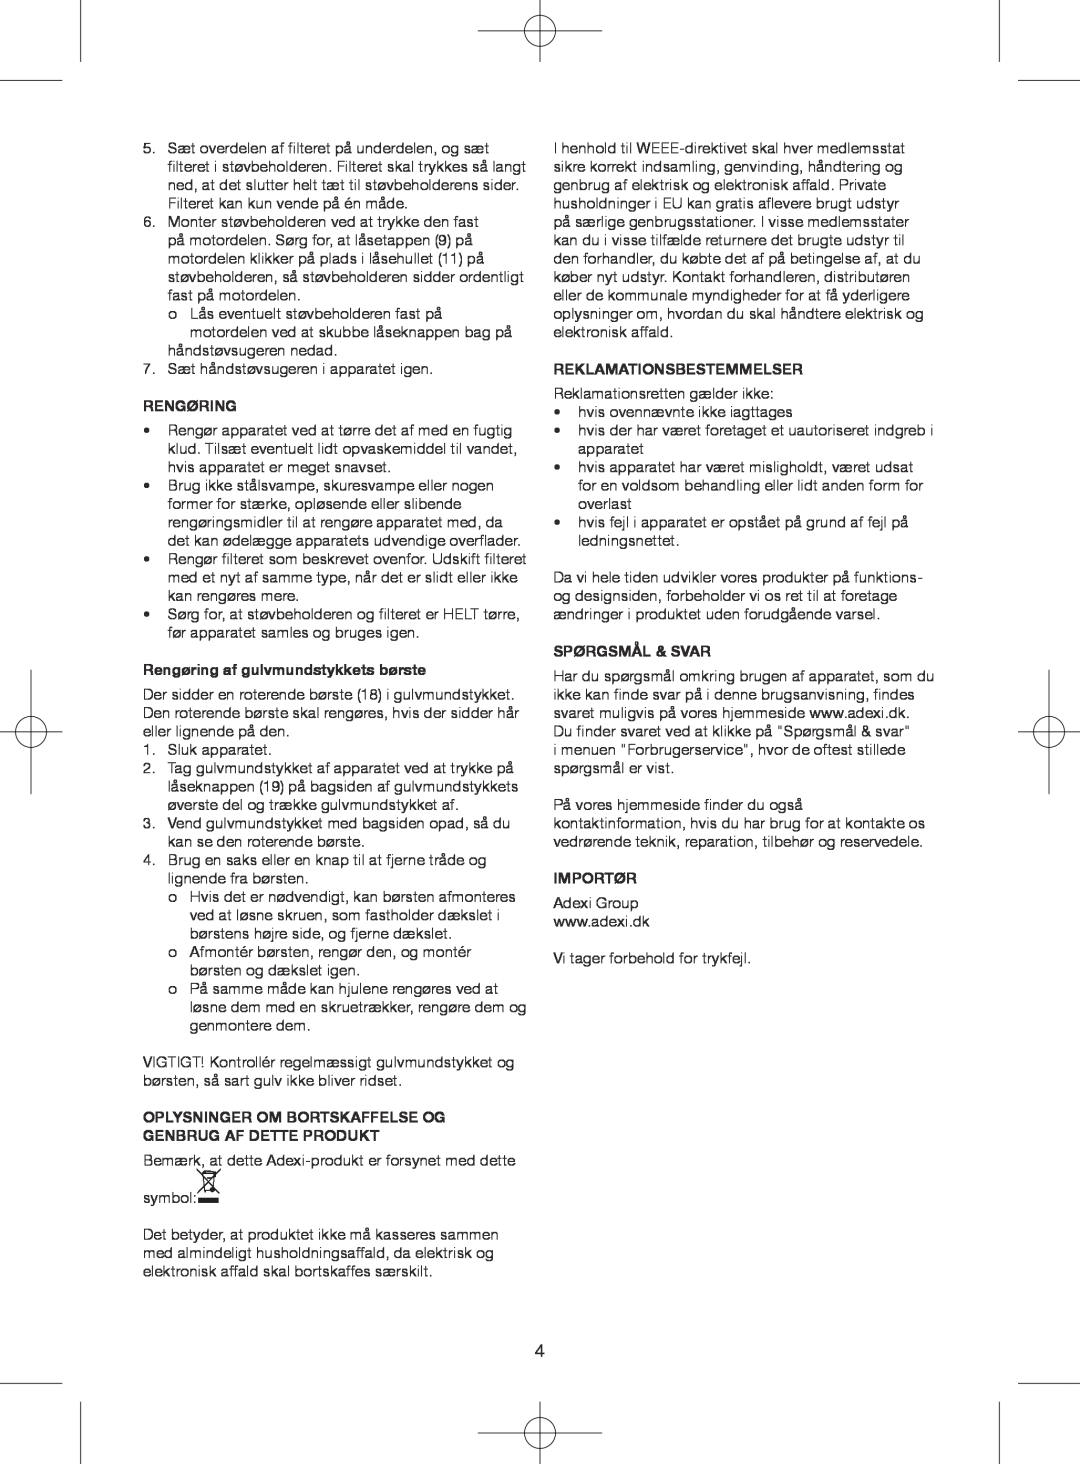 Melissa 640-075 manual Rengøring af gulvmundstykkets børste, Reklamationsbestemmelser, Spørgsmål & Svar, Importør 